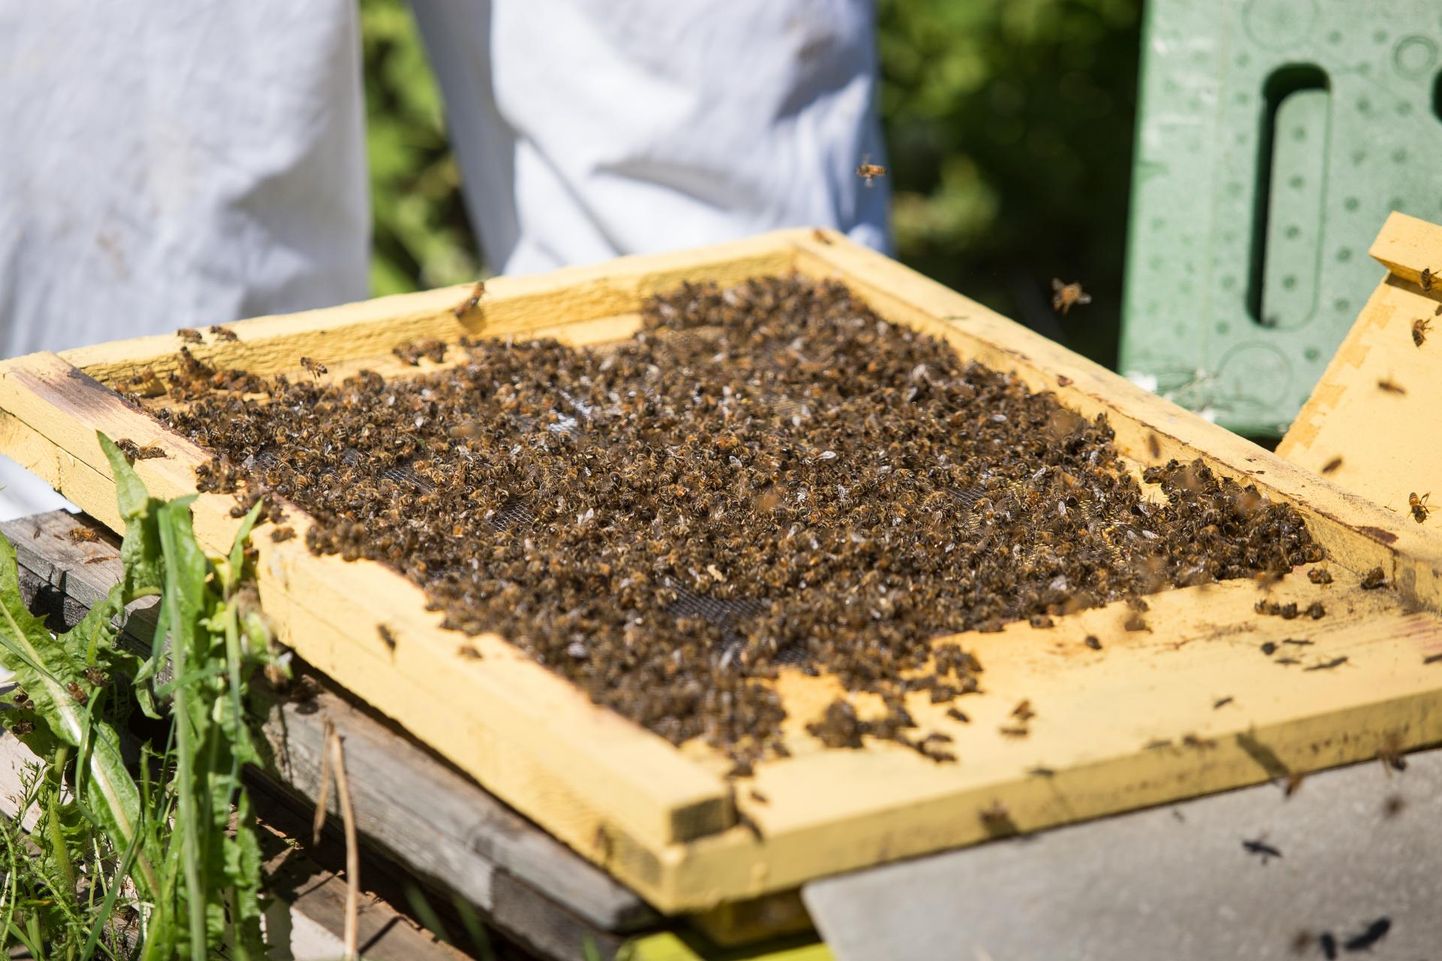 Eelmisel aastal hukkusid Injus mitmed mesilased, tänavu on registreeritud esimene analoogne juhtum Lääne-Virumaal, loodetavasti jääb see viimaseks.